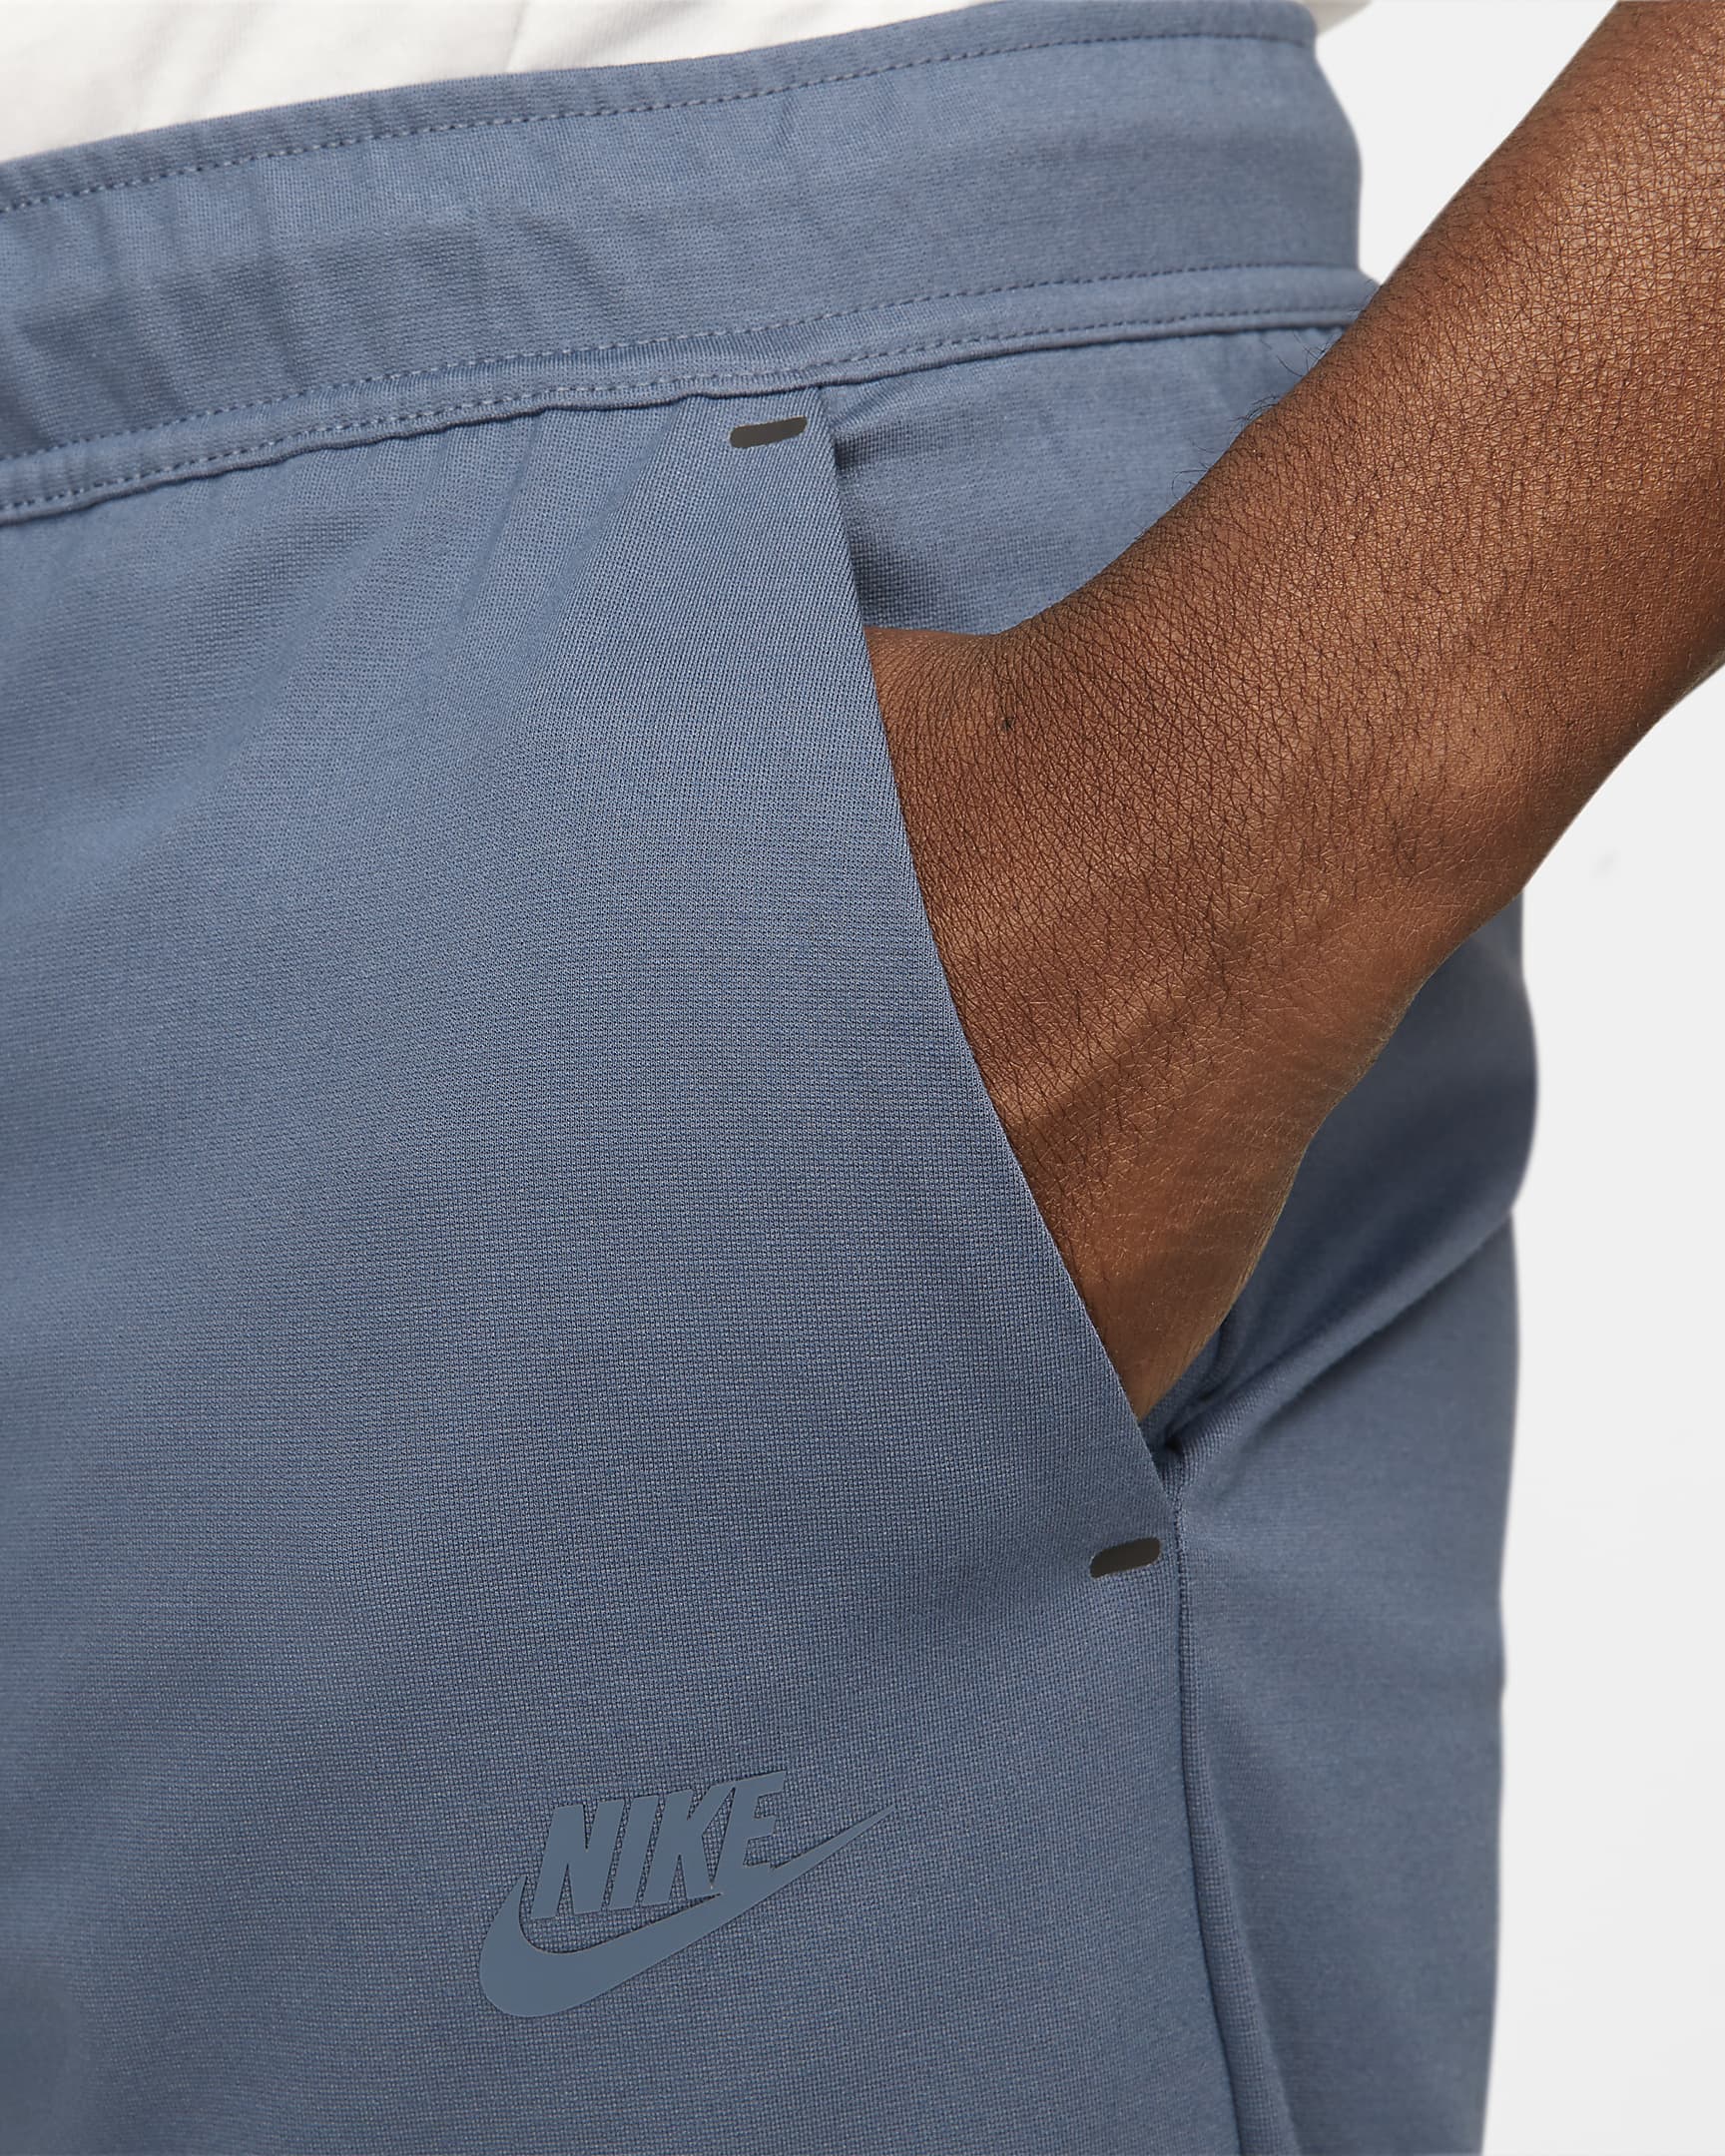 Nike Sportswear Tech Fleece Lightweight Men's Shorts. Nike.com